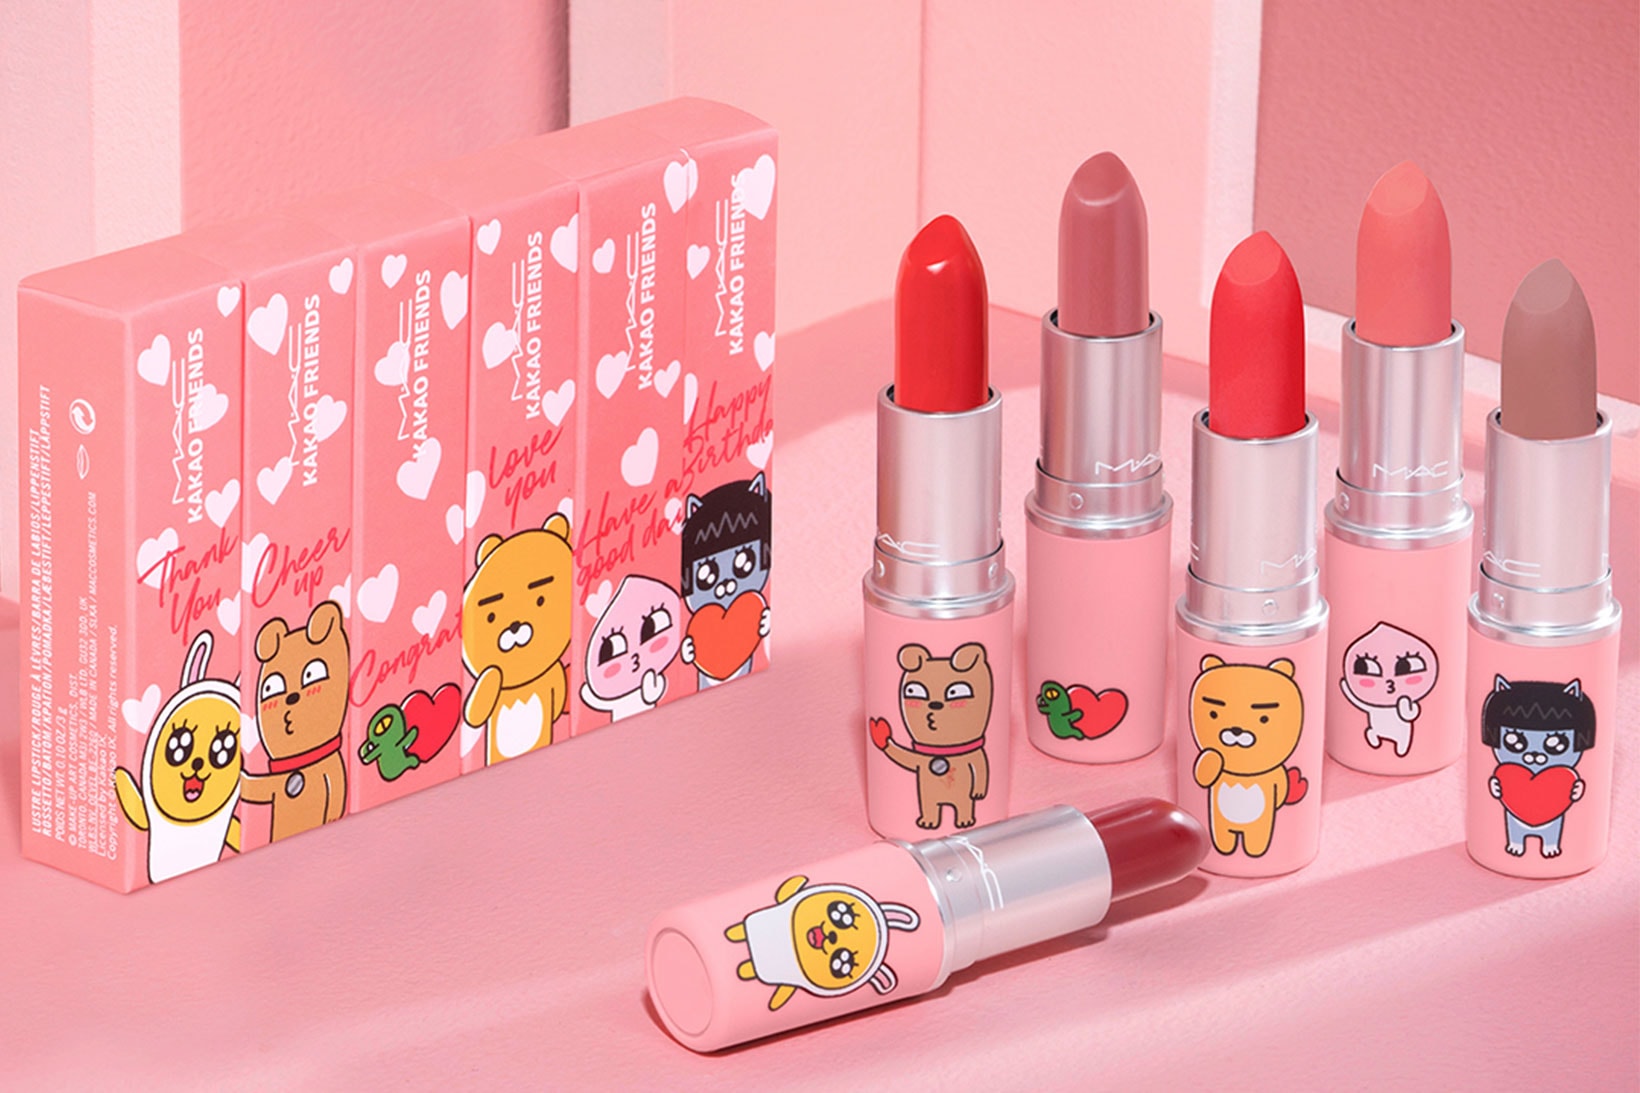 kakao friends mac cosmetics lipstick collaboration pink ryan apeach neo muzi